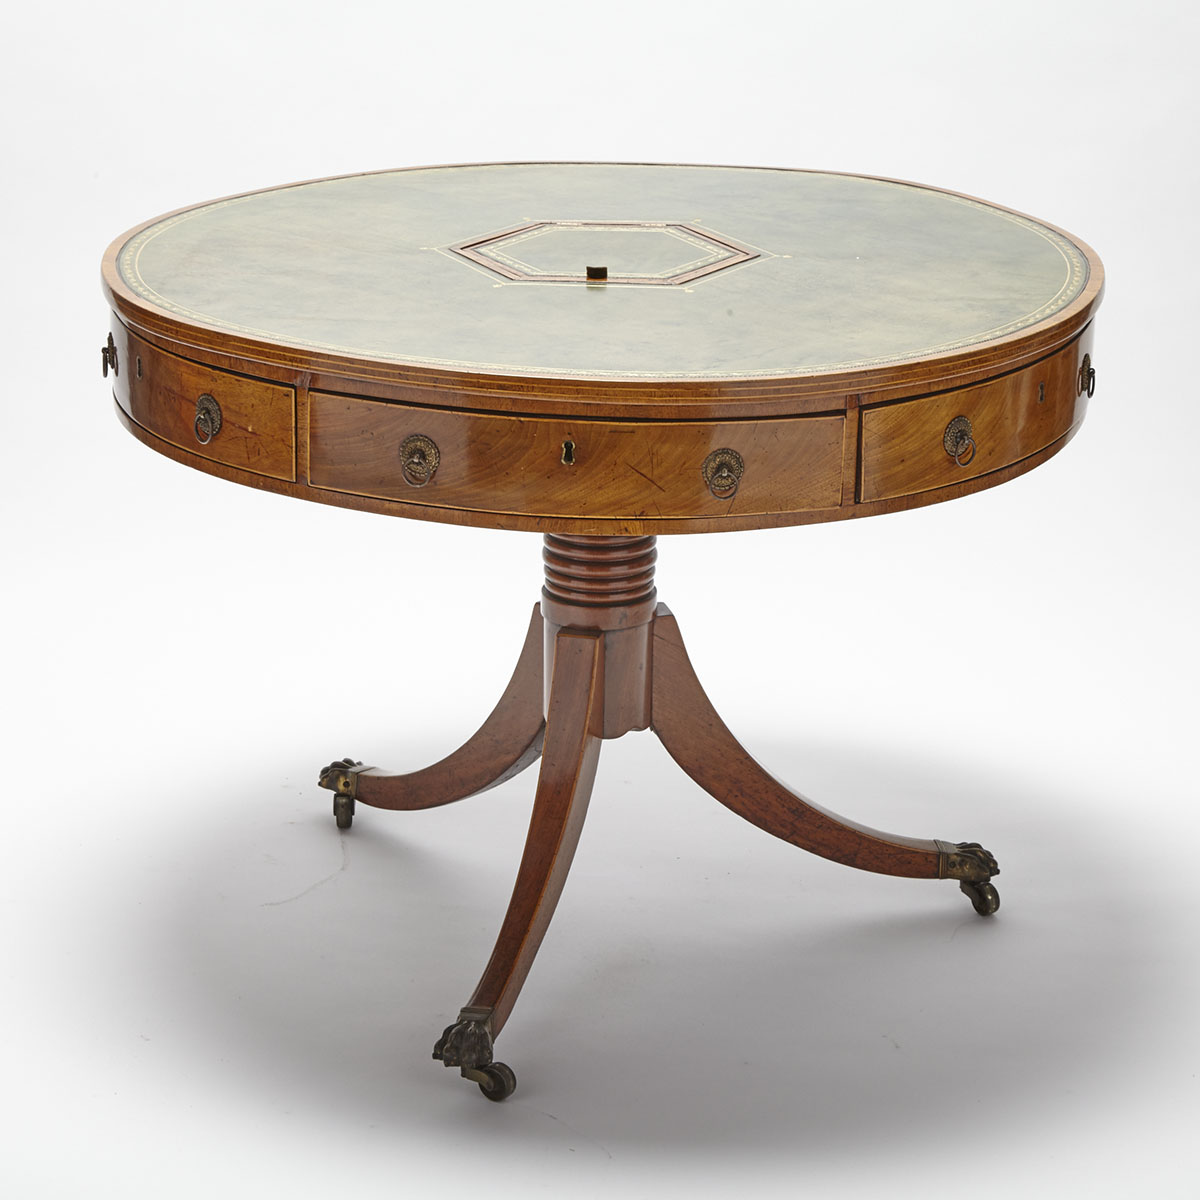 Regency Mahogany Rent Table, early 19th century